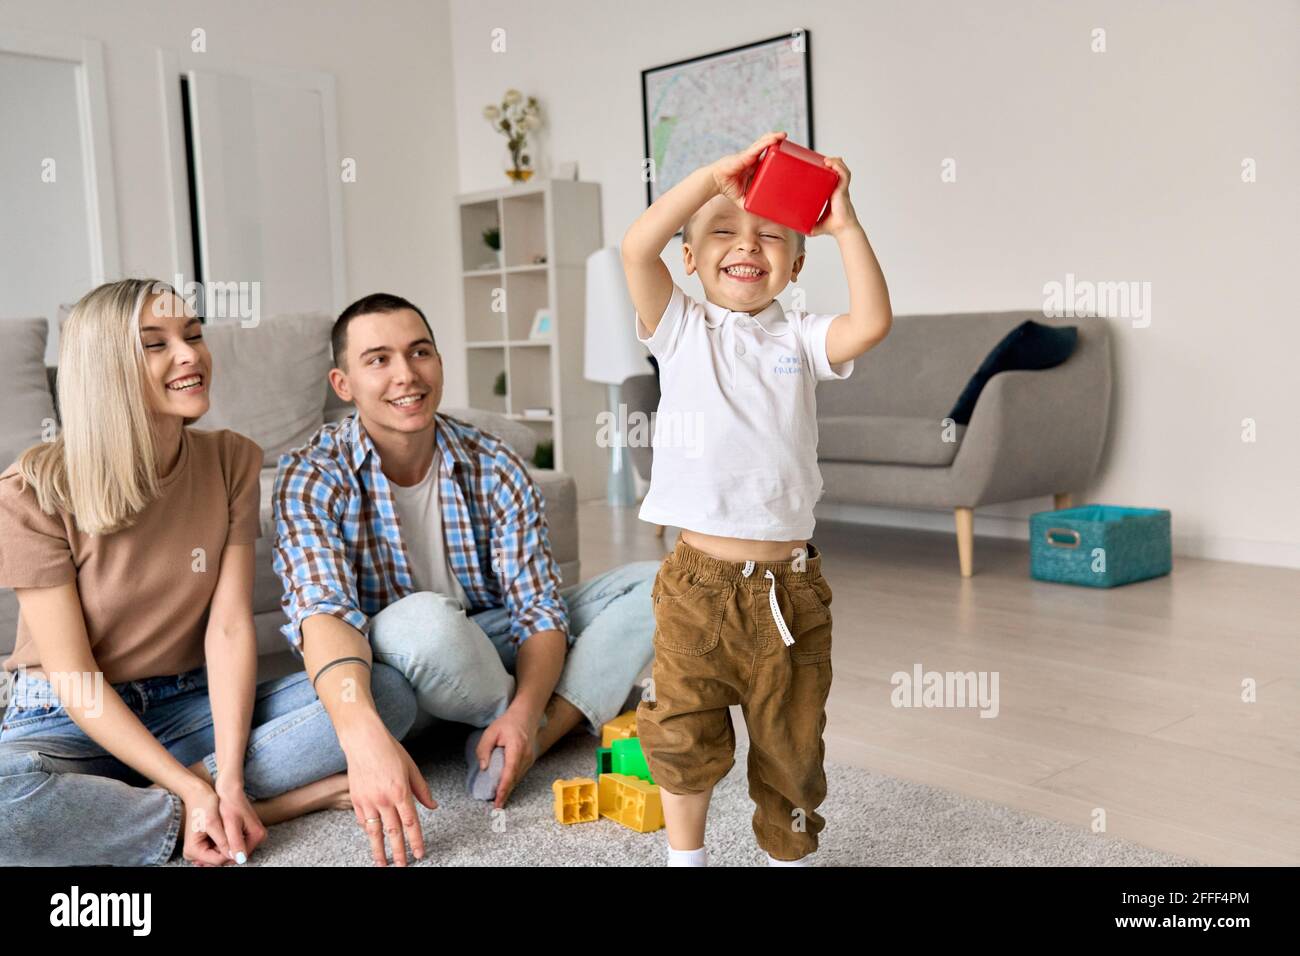 Une jeune famille heureuse avec un enfant à la maison, assis sur le sol, en appréciant le temps ensemble. Banque D'Images